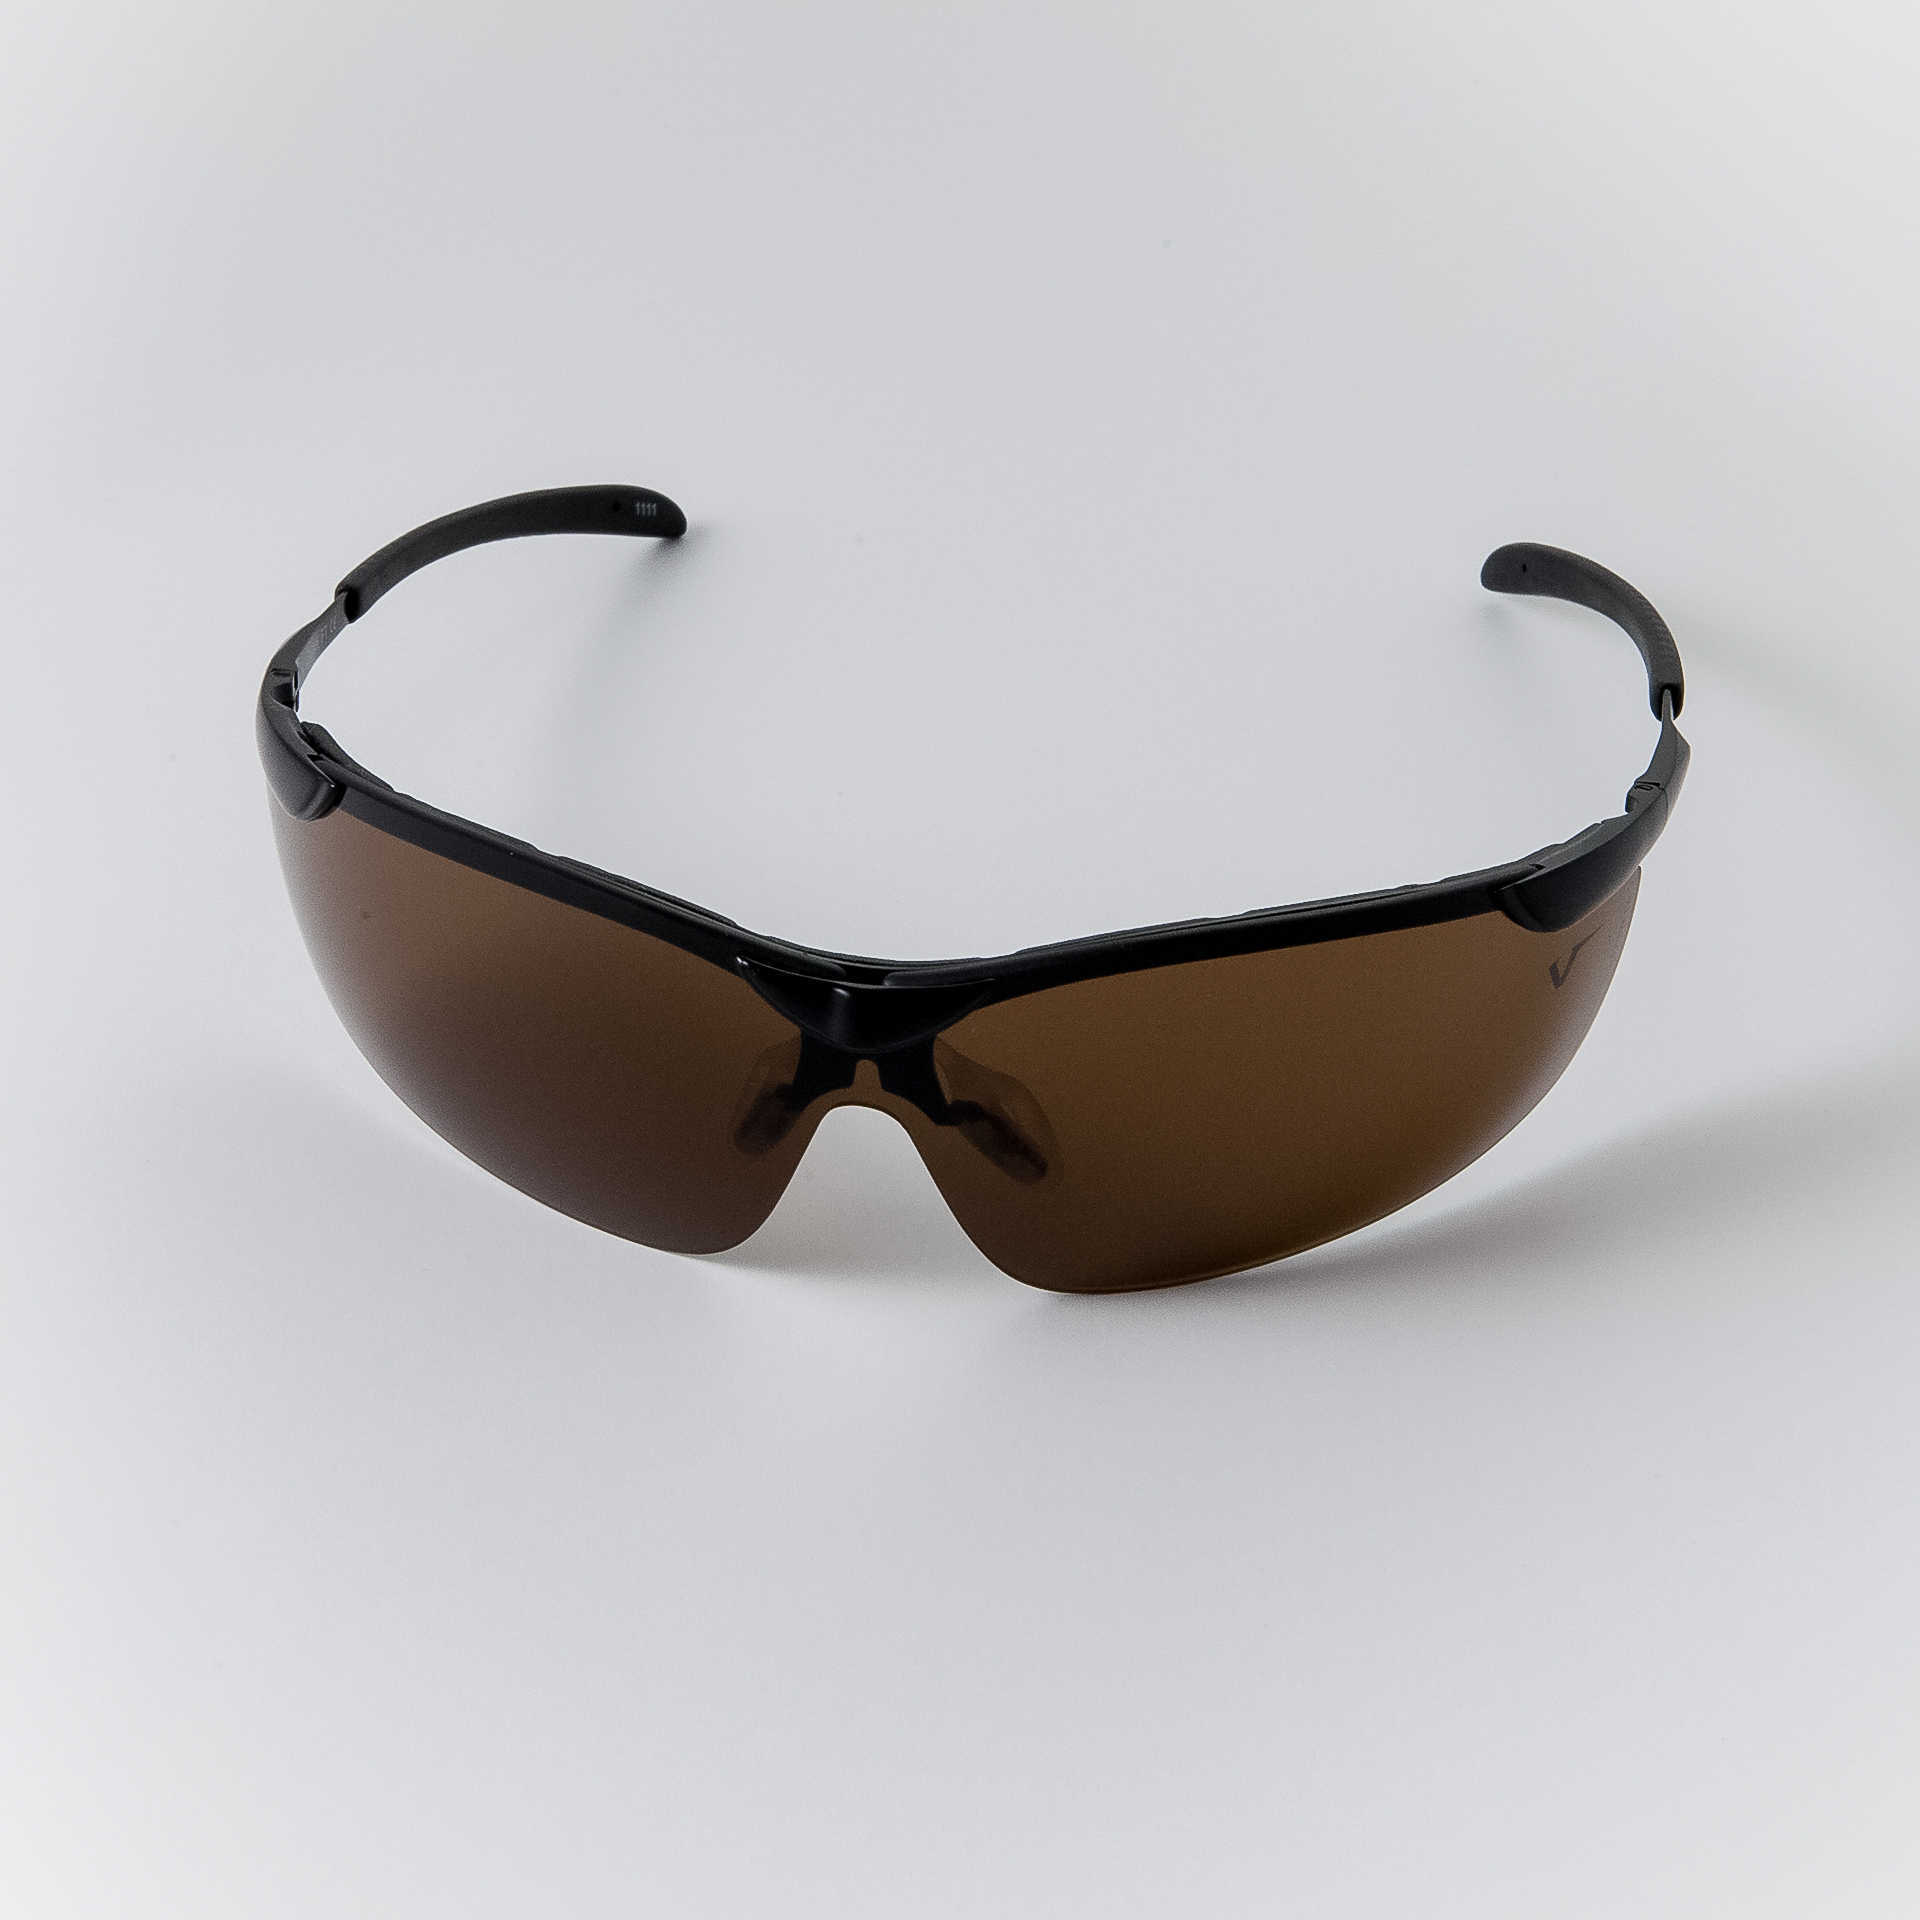 Univet Safety Glasses, Amber Lens, Half-Frame, Black/Orange Frame